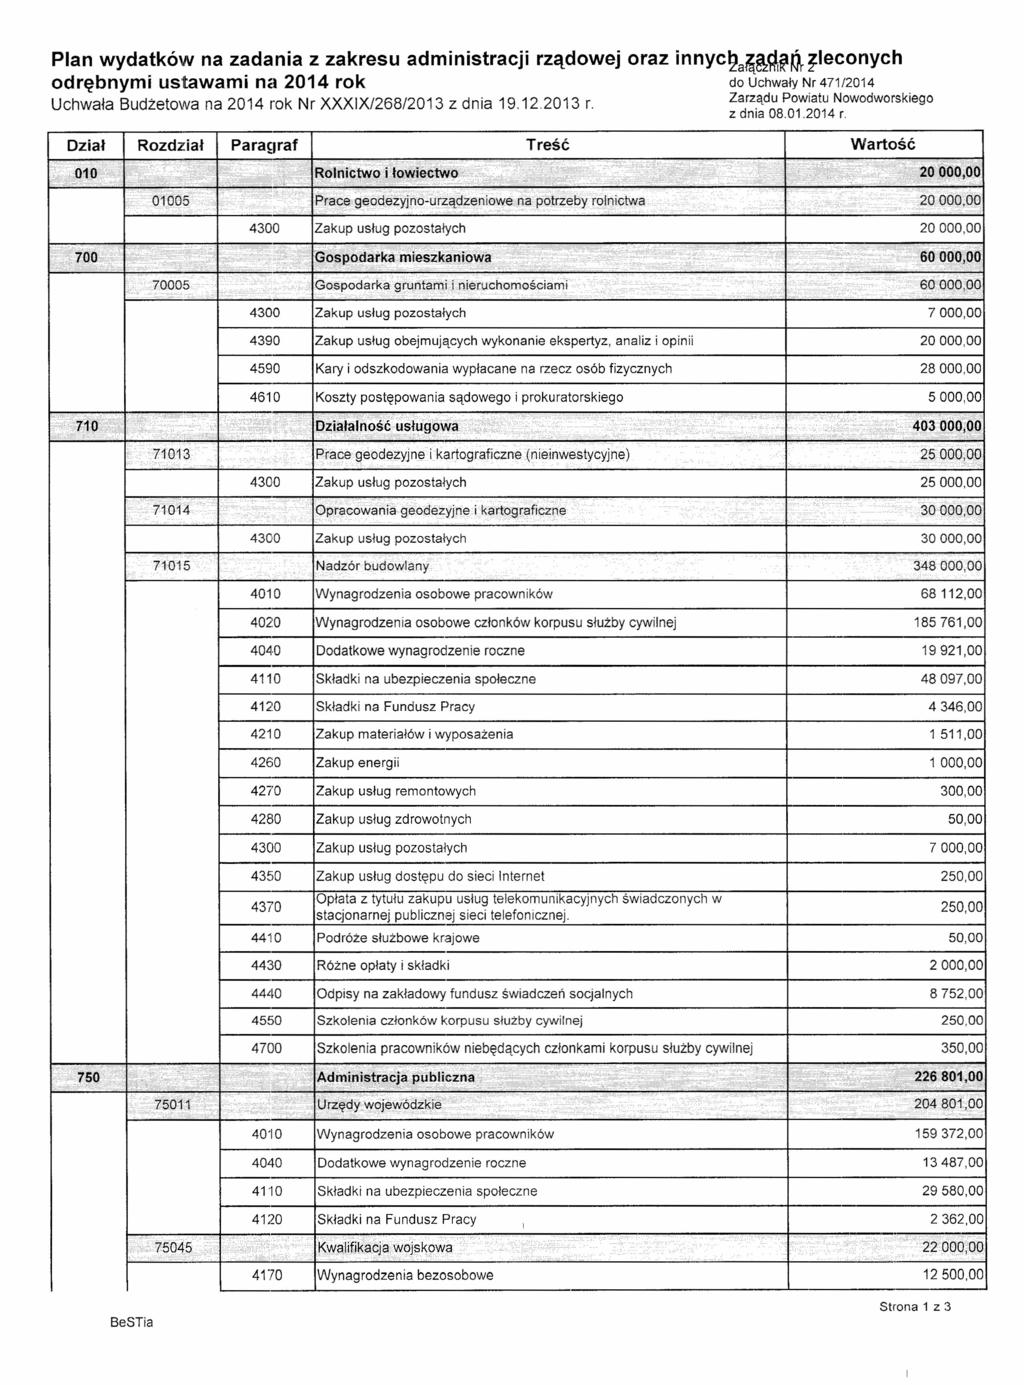 Plan wydatków na zadania z zakresu administracji rządowej oraz innyc2a~&~~~ zleconych odrębnymi ustawami na 2014 rok do Uchwały Nr 471/2014 Uchwala Budżetowa na 2014 rok Nr XXXIX/268/2013